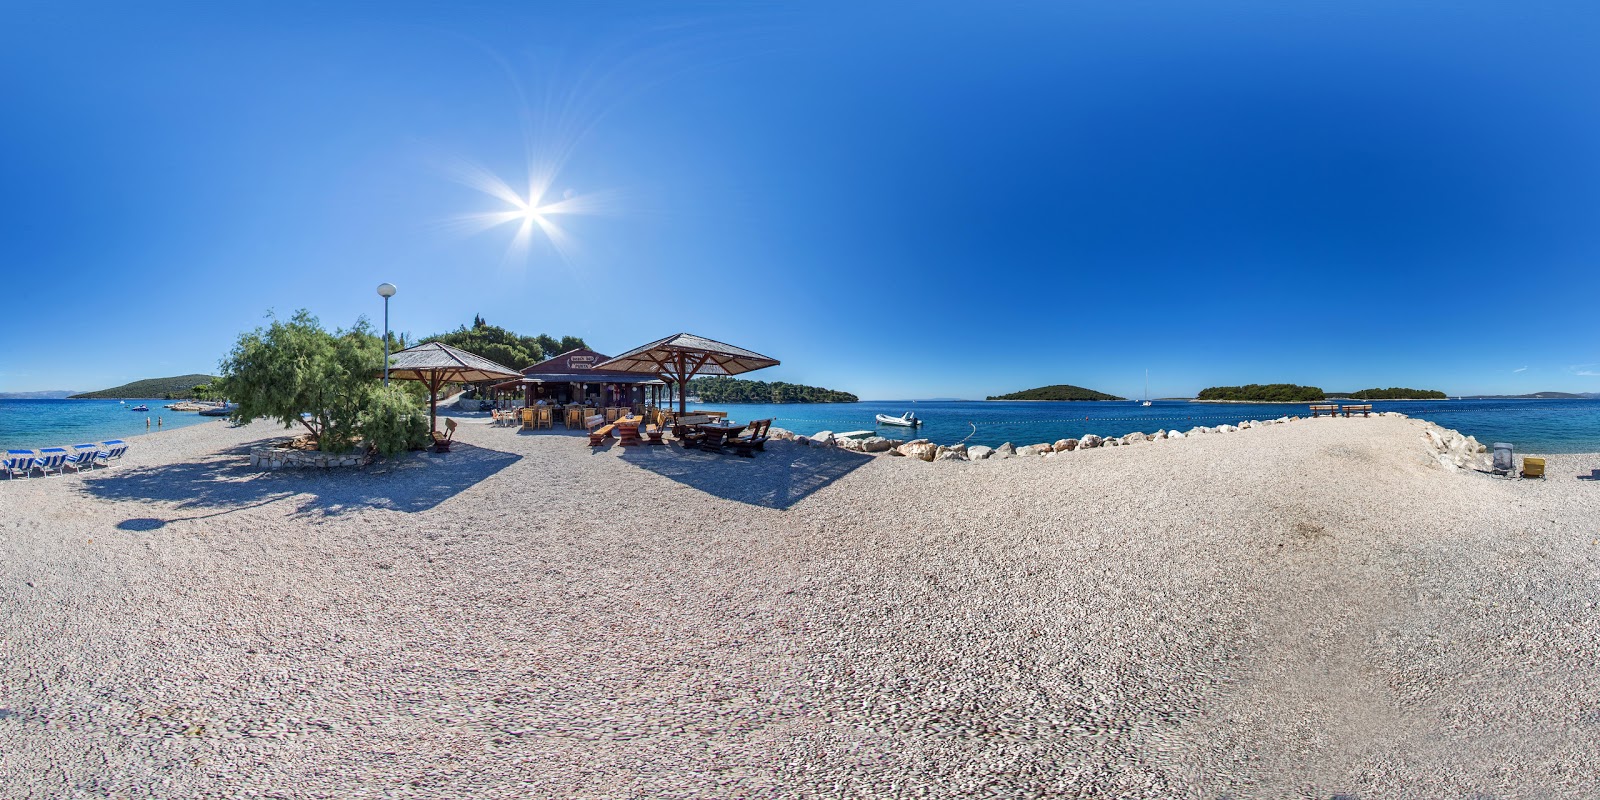 Foto af Sipova beach med turkis rent vand overflade